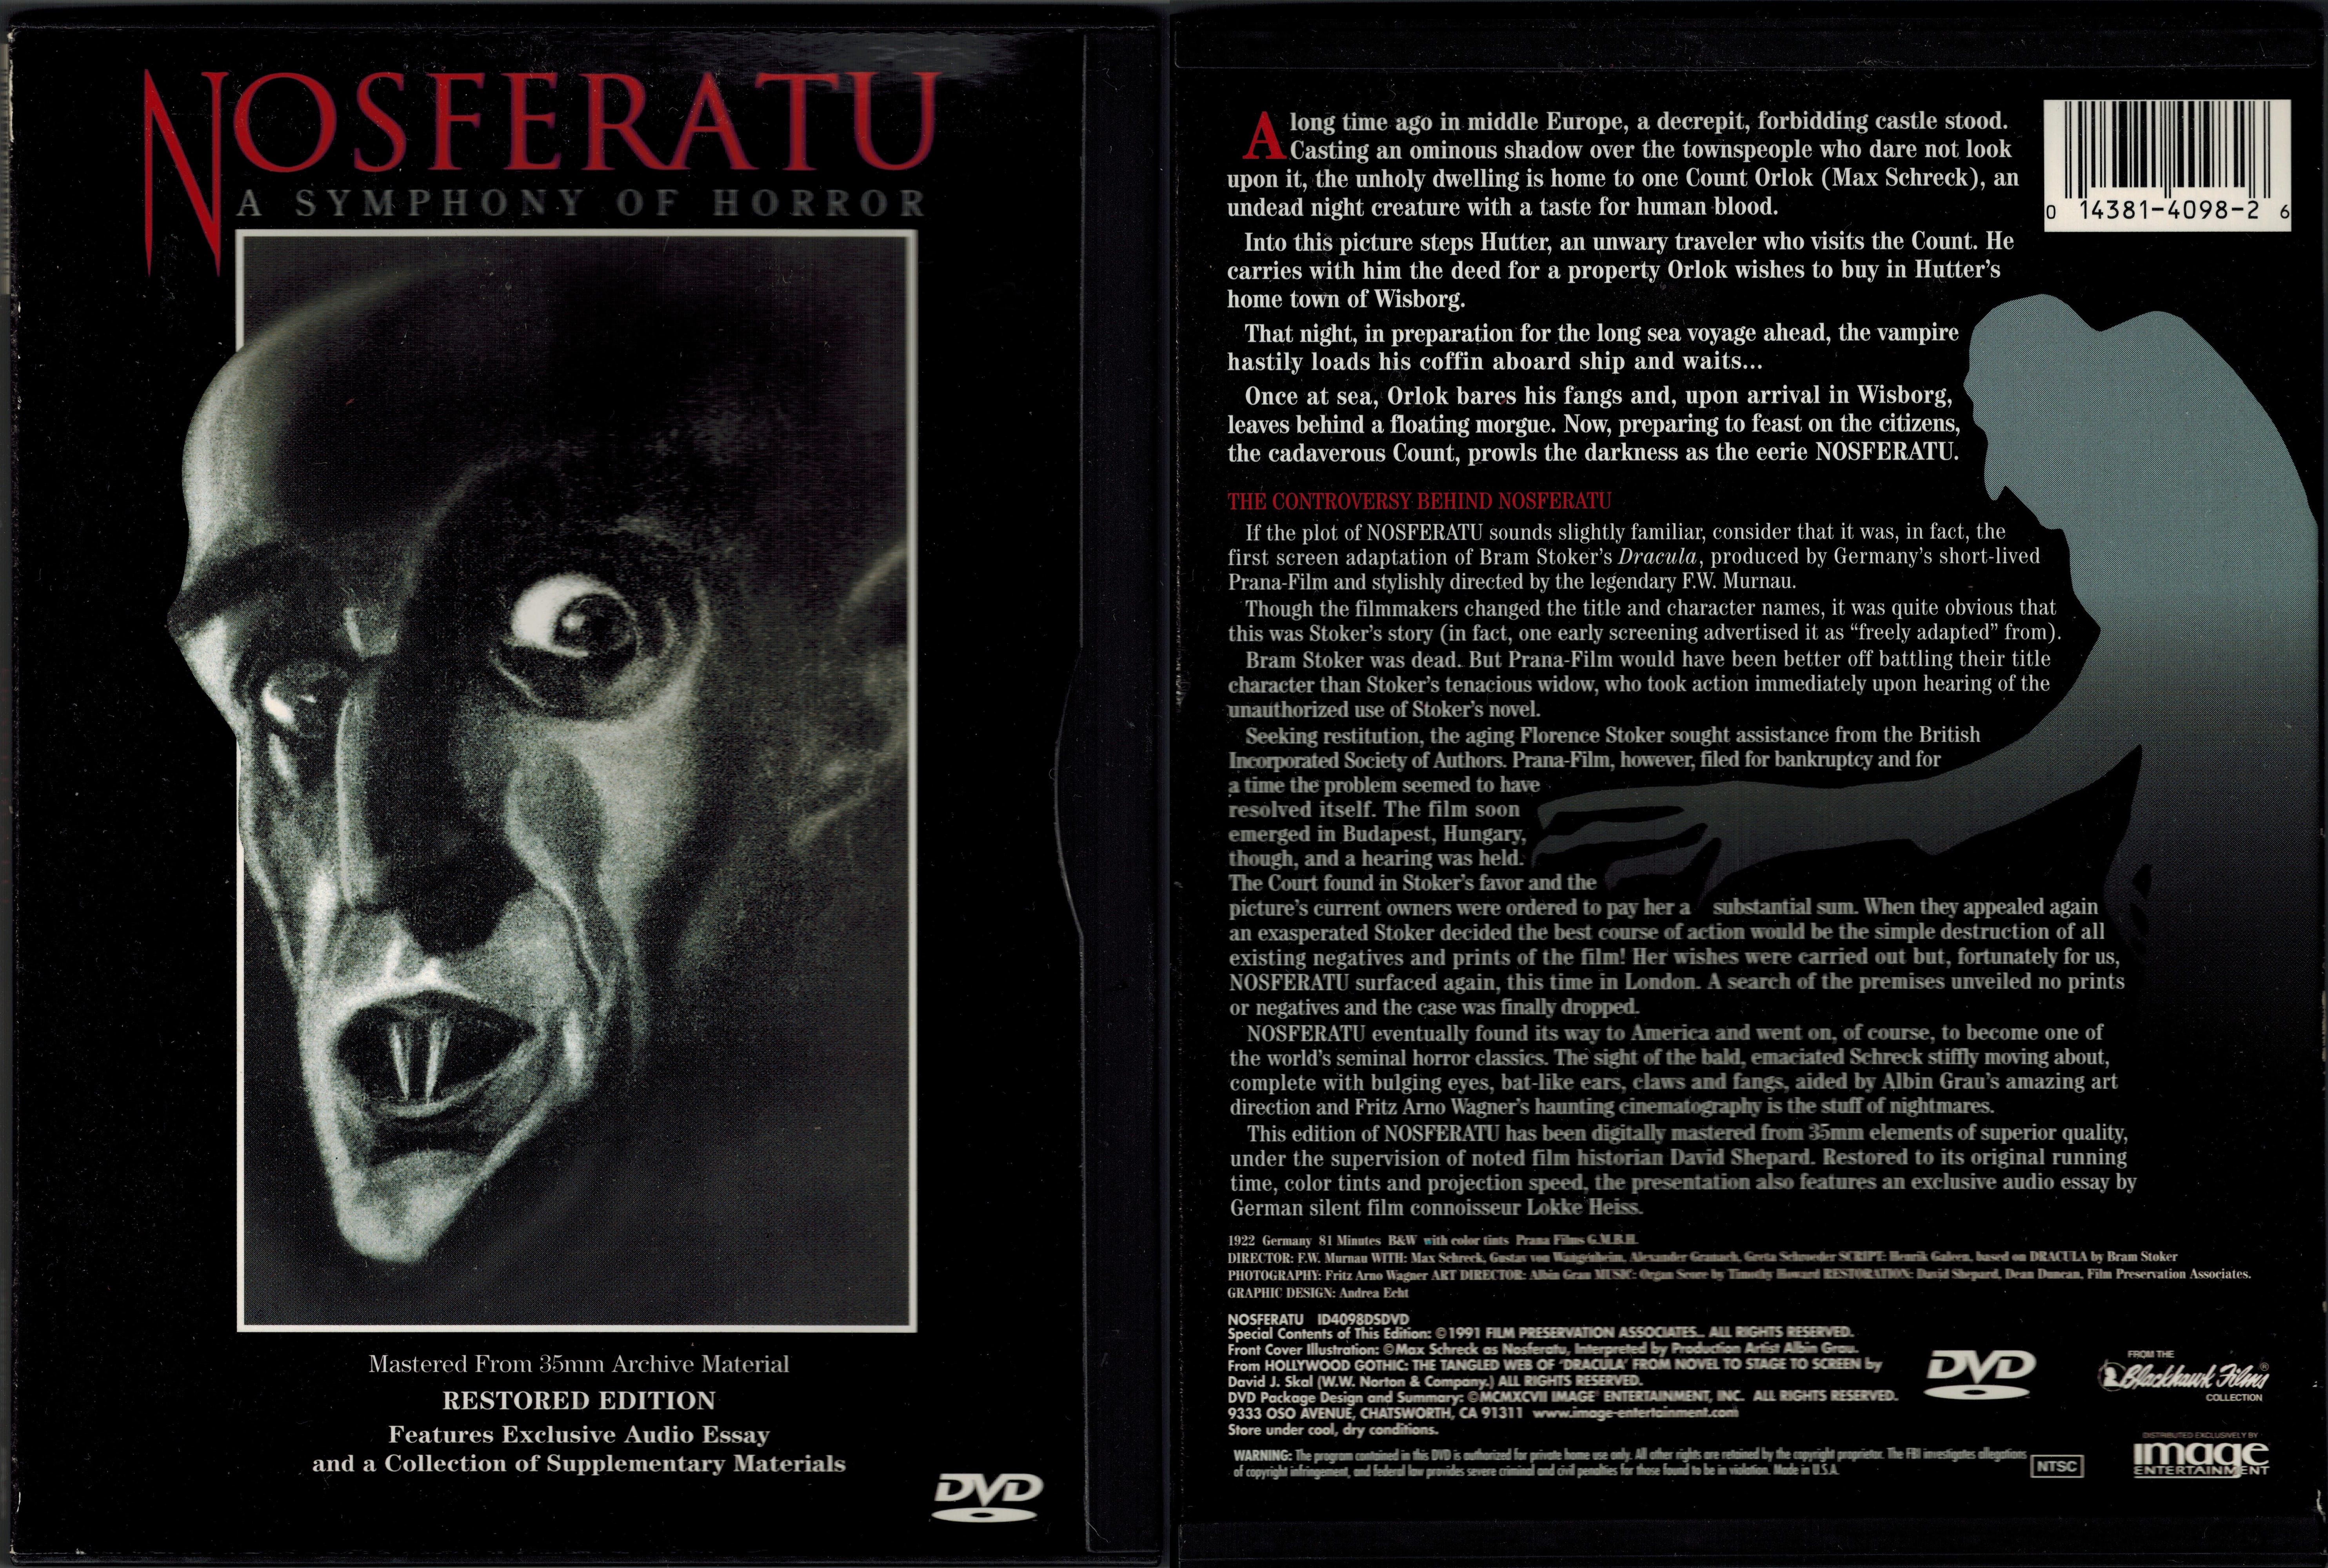 Nosferatu (1922) US Image DVD, 1997